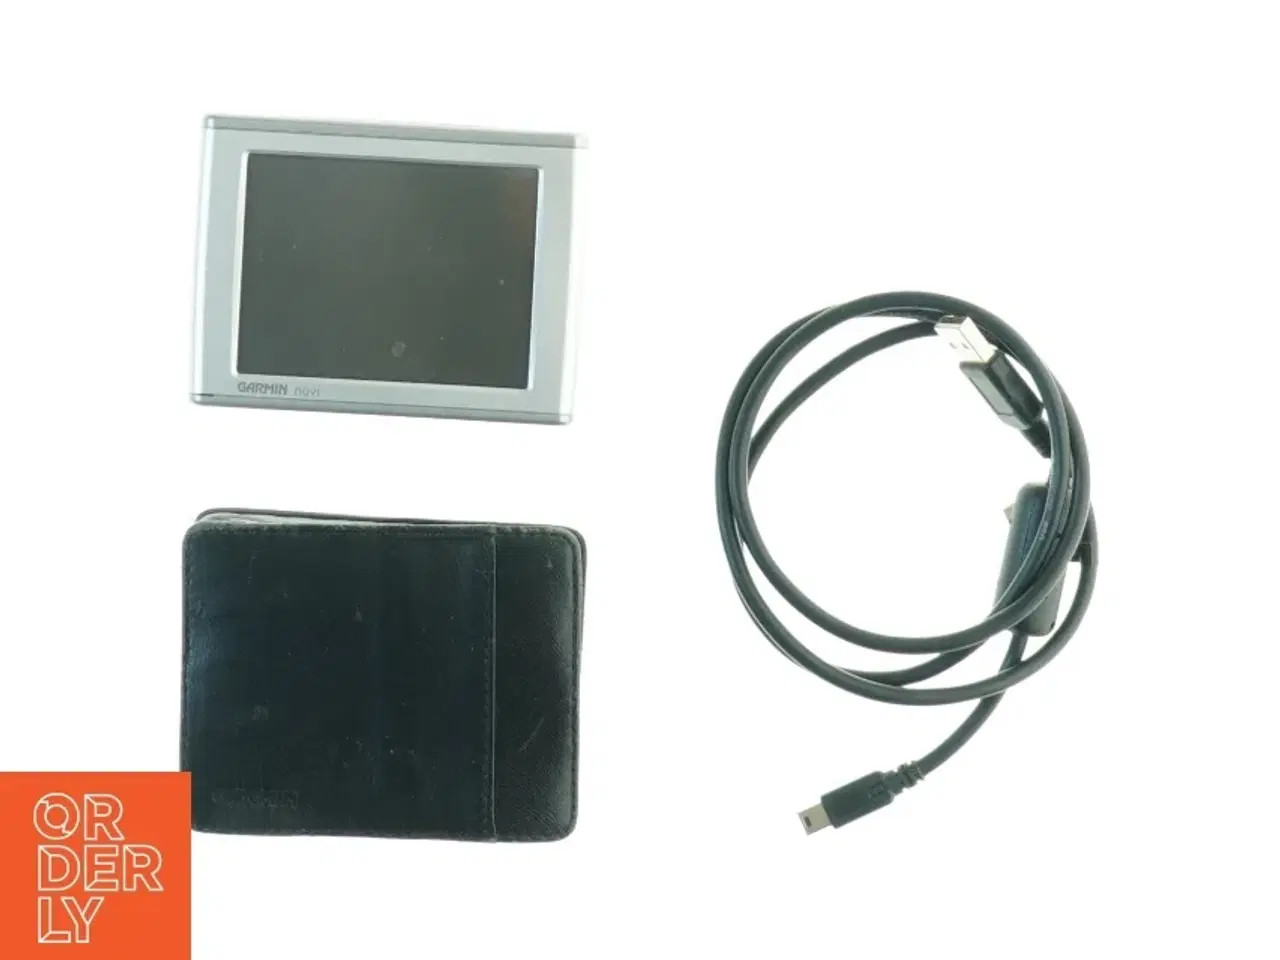 Billede 1 - Garmin nuvi GPS med opladerkabel og etui fra Garmin (str. 10 x 7 cm)